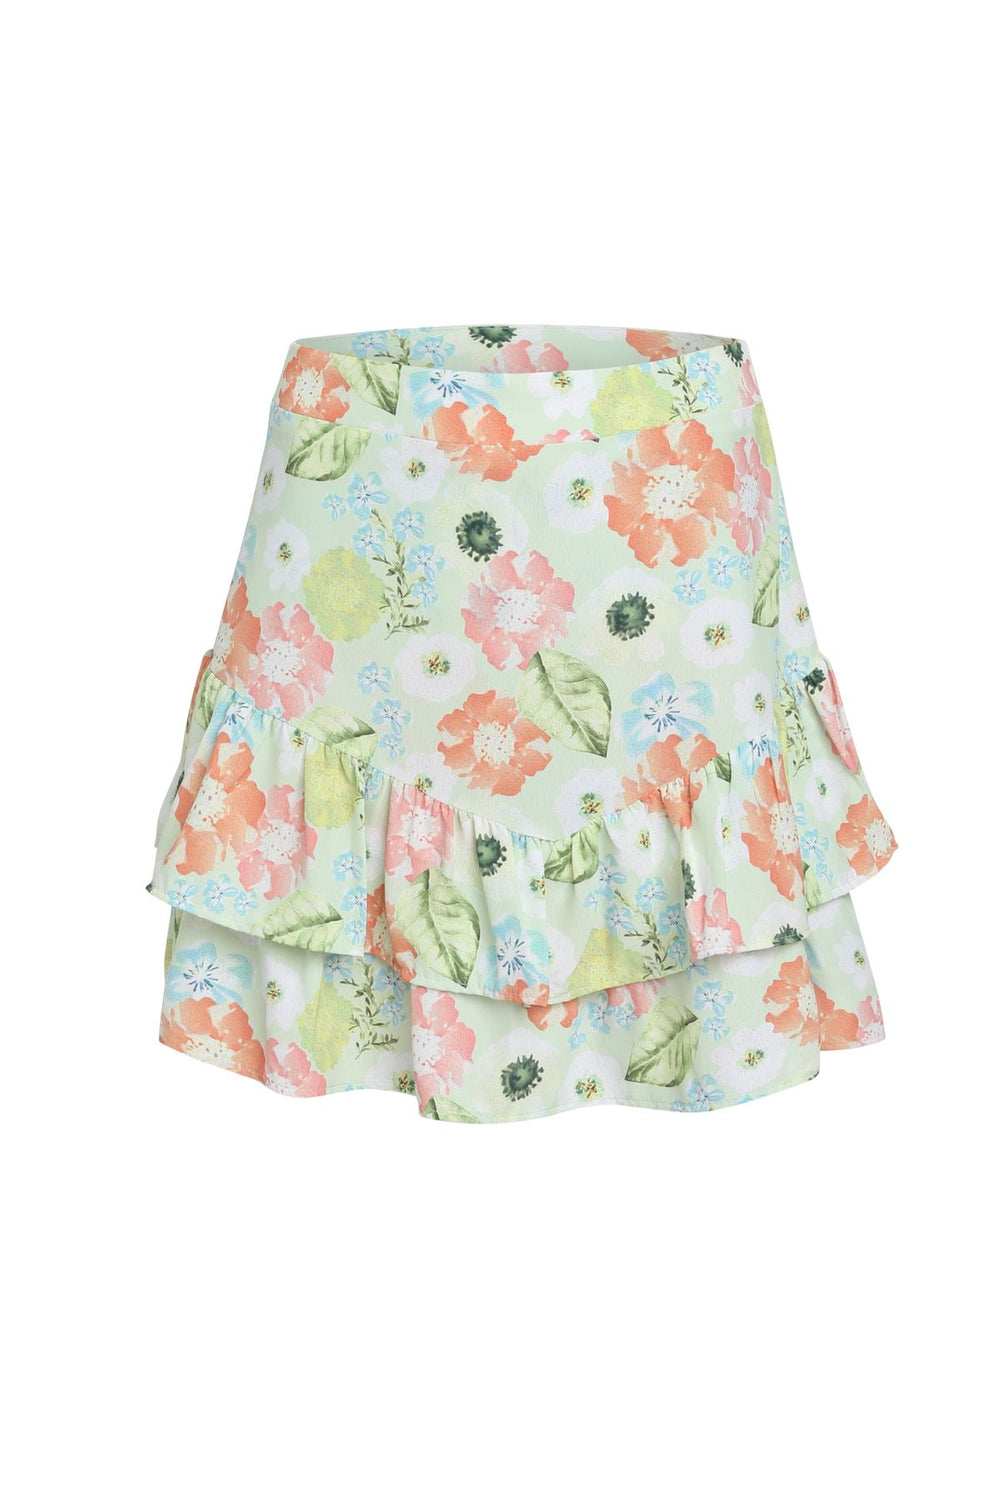 Frill Patterned Short Skirt Green